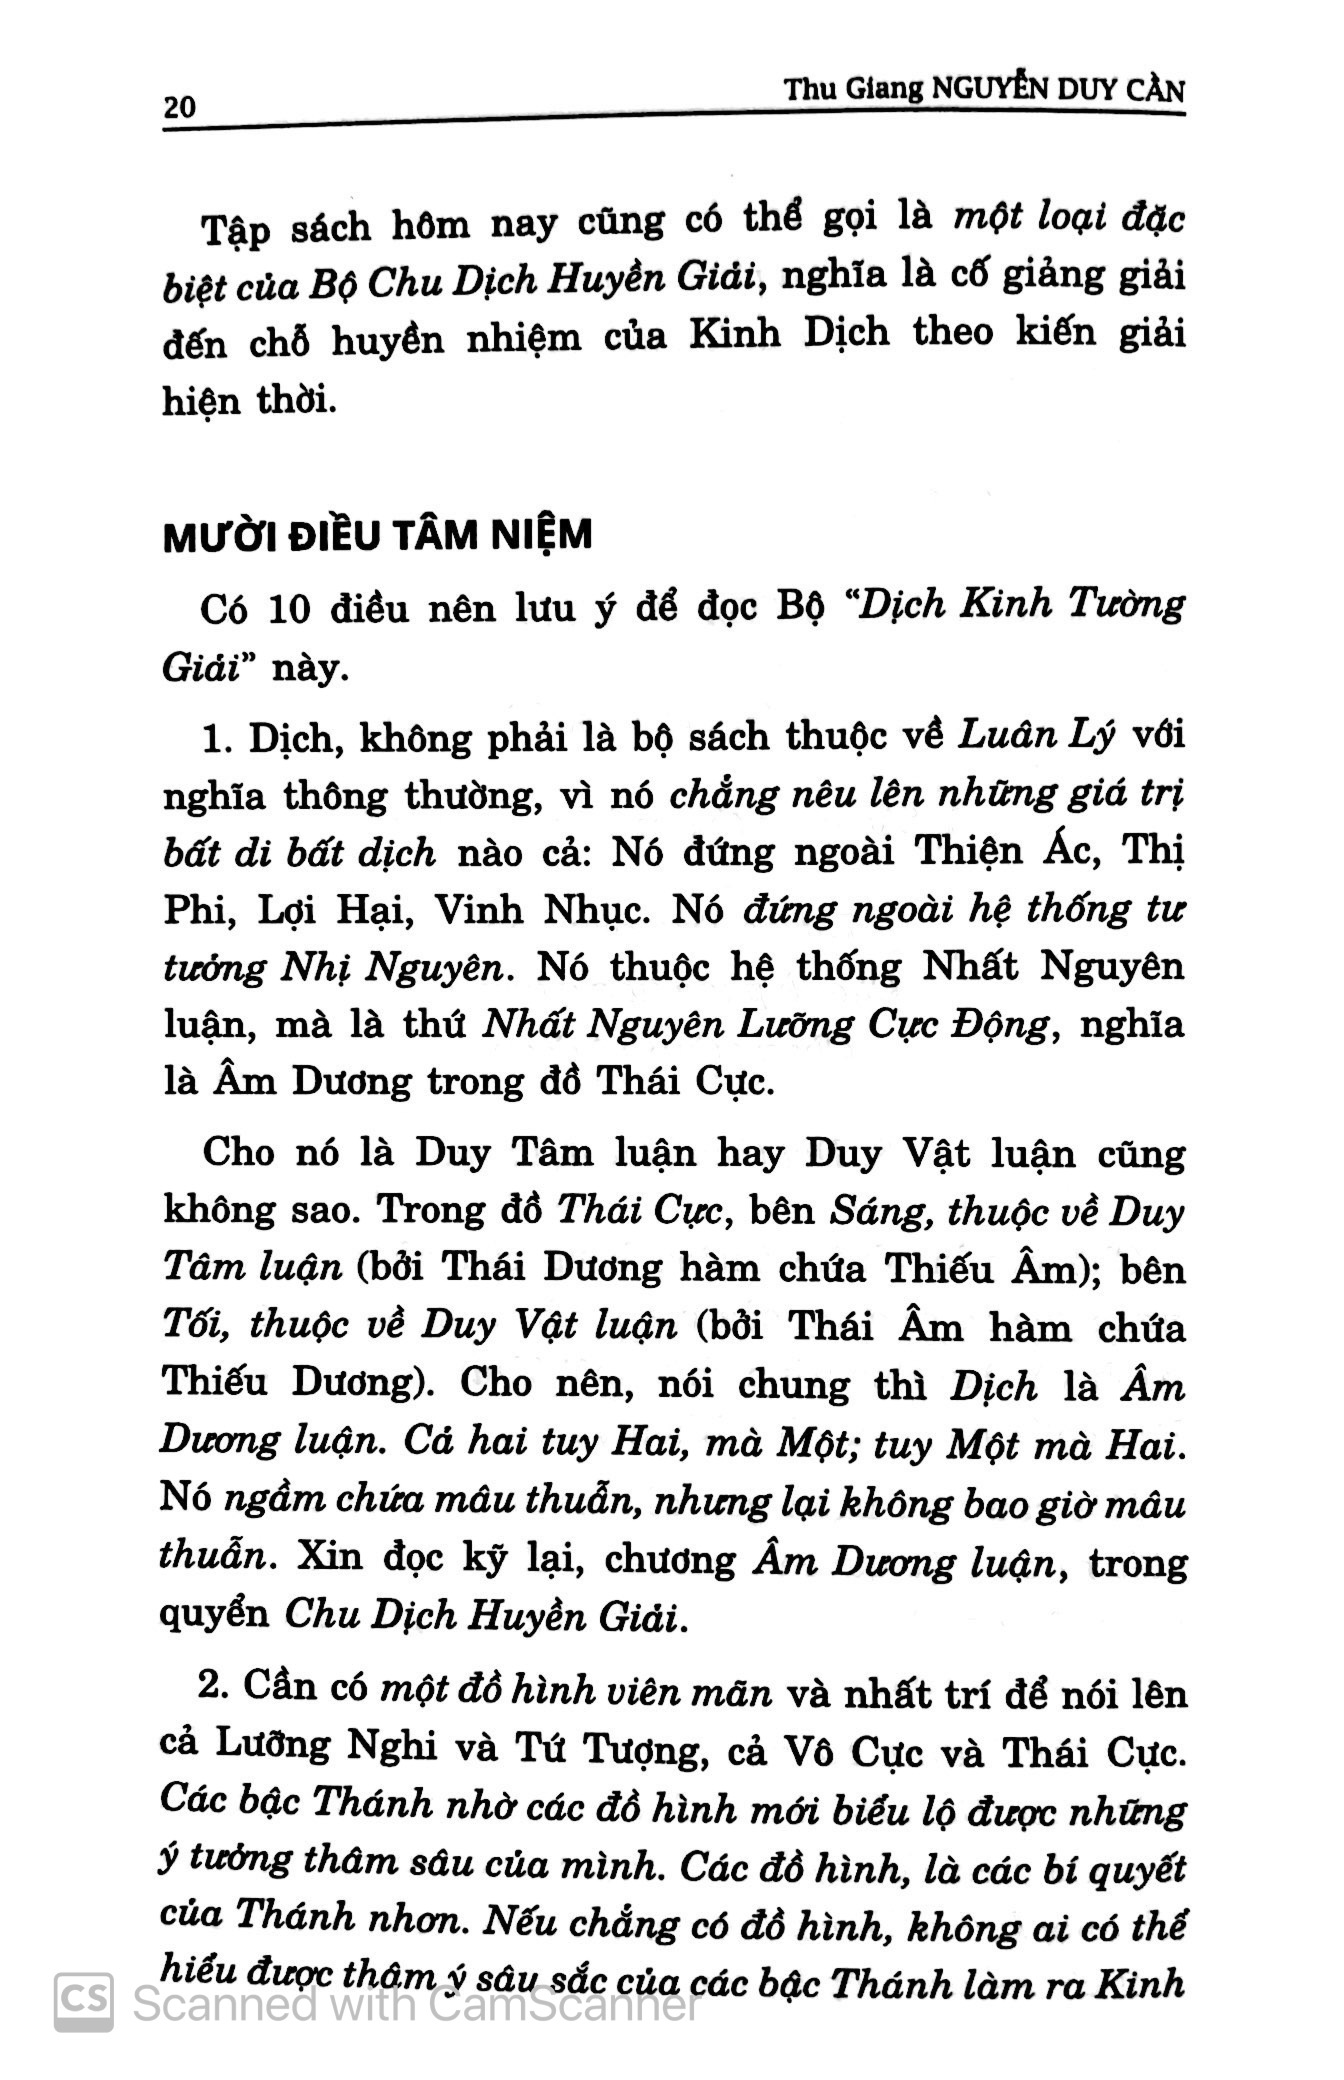 Dịch Kinh Tường Giải Di Cảo: Quyển Thượng PDF